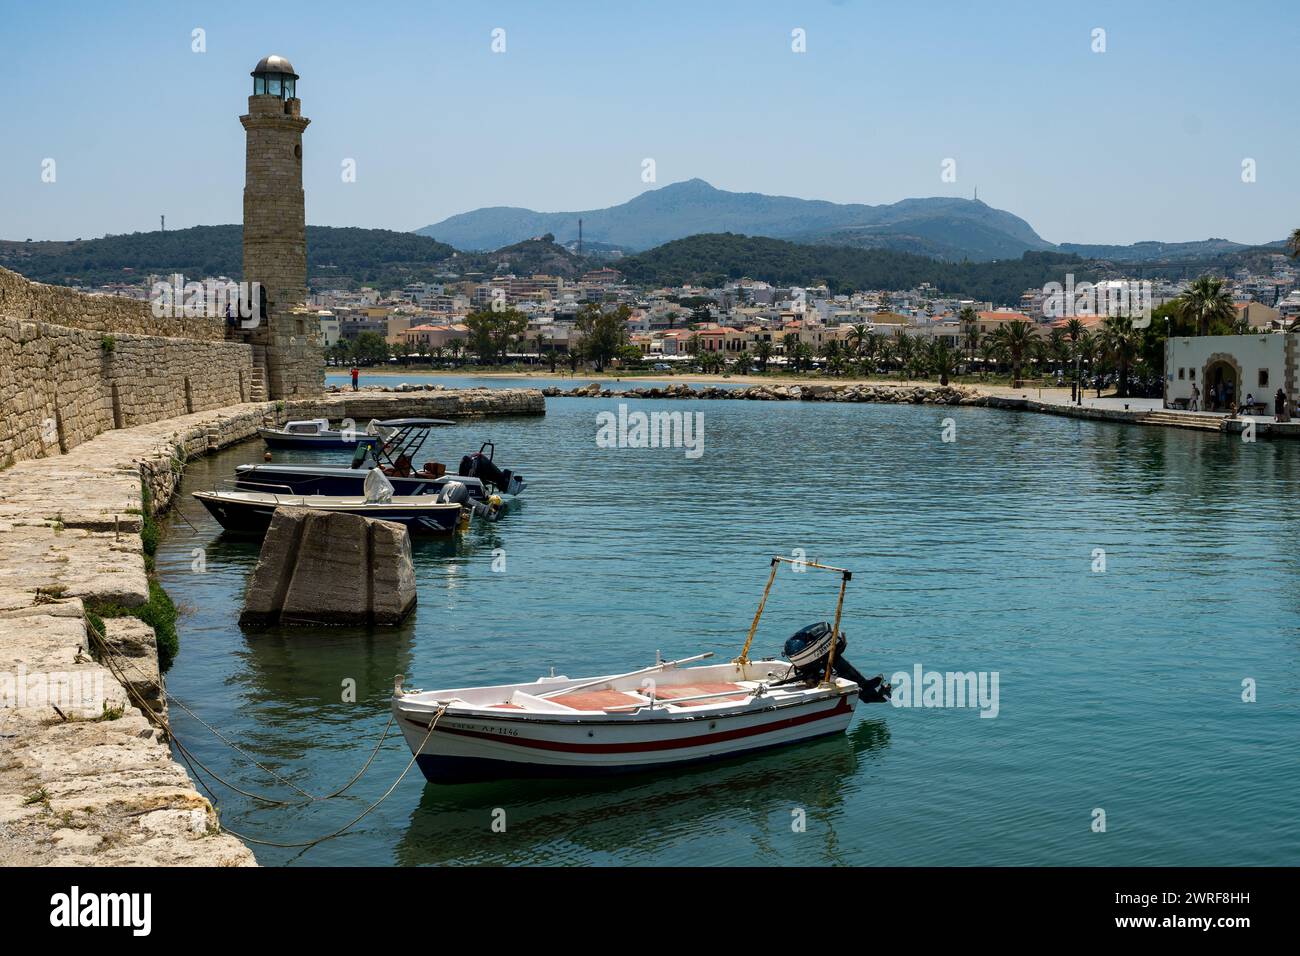 Lo storico porto veneziano nel cuore della città vecchia di Rethymno, Creta. Foto Stock